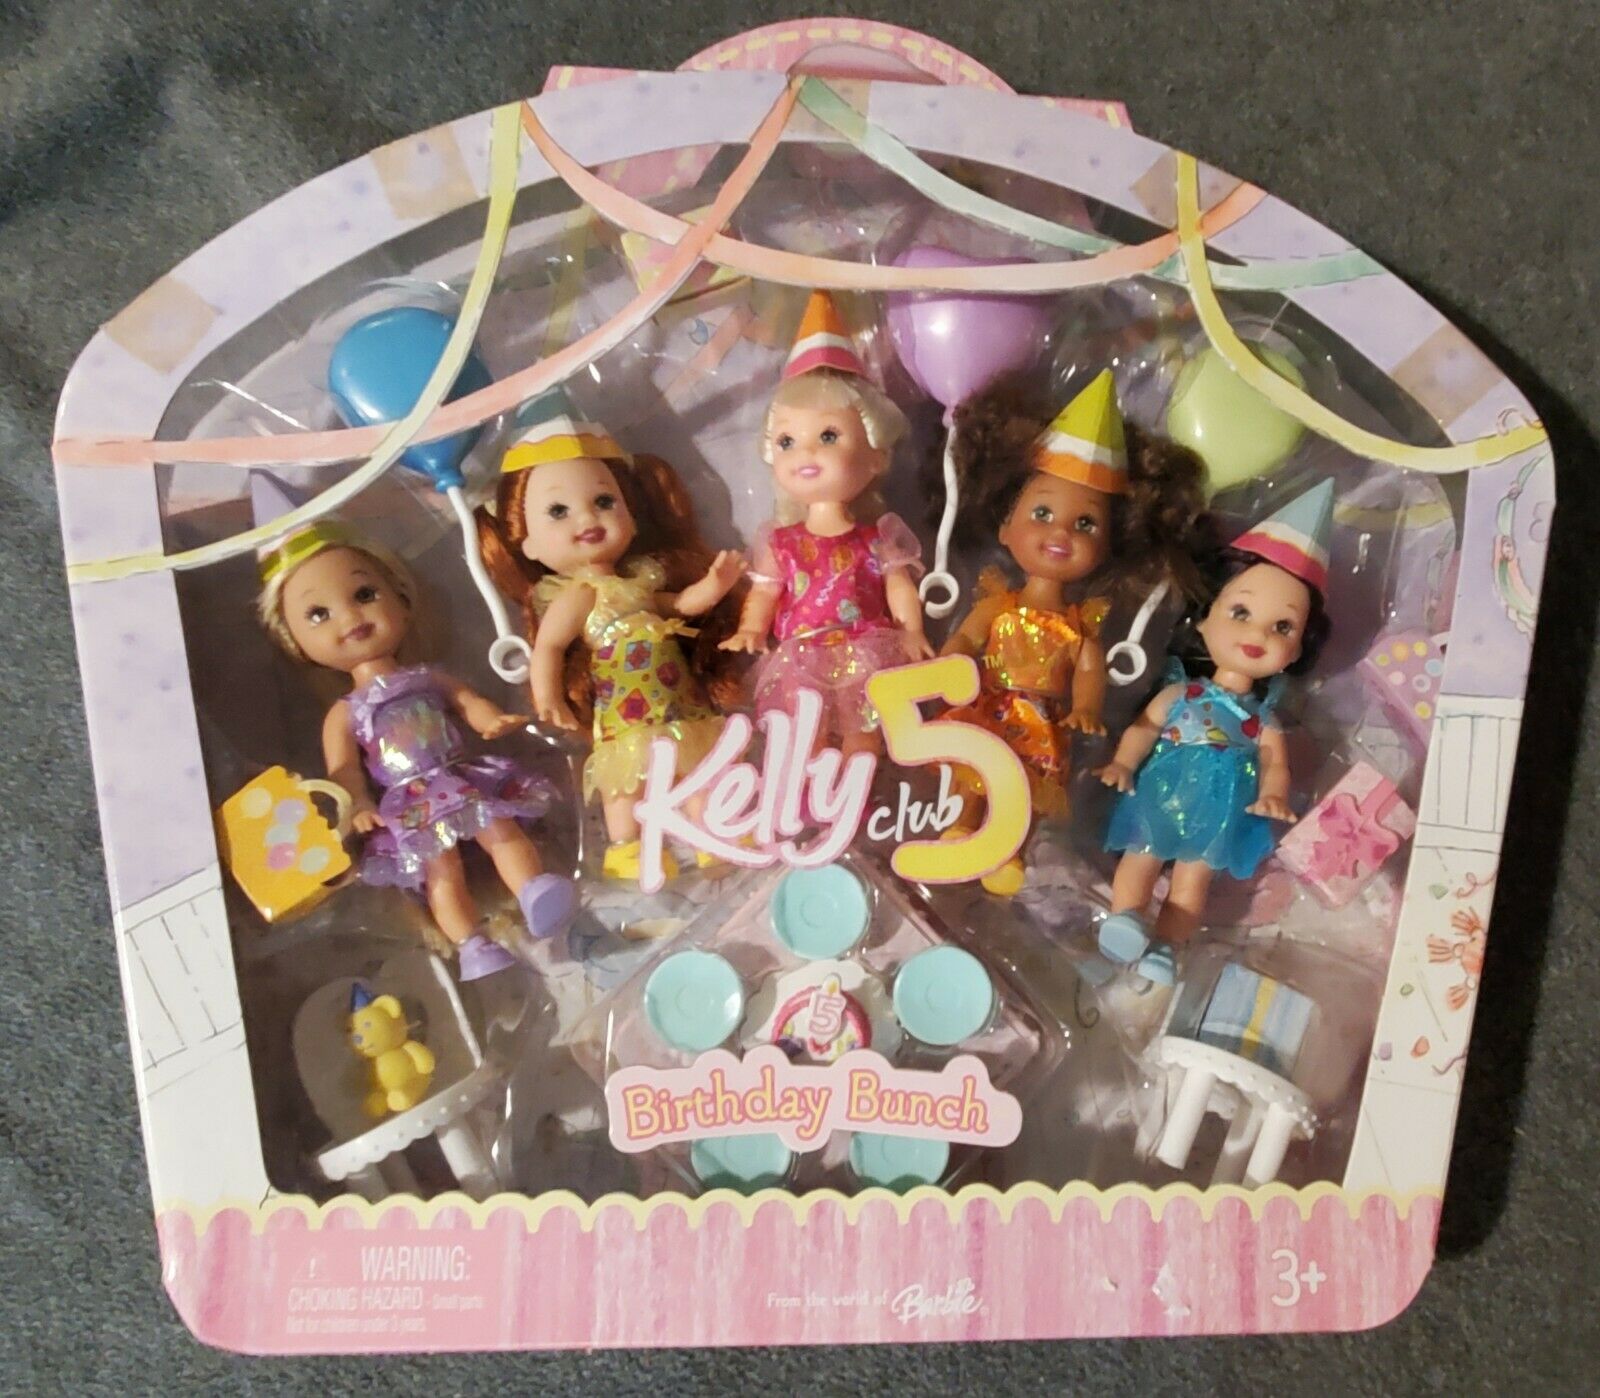 Kelly Club 5 Birthday Bunch Mattel Dolls New In Box